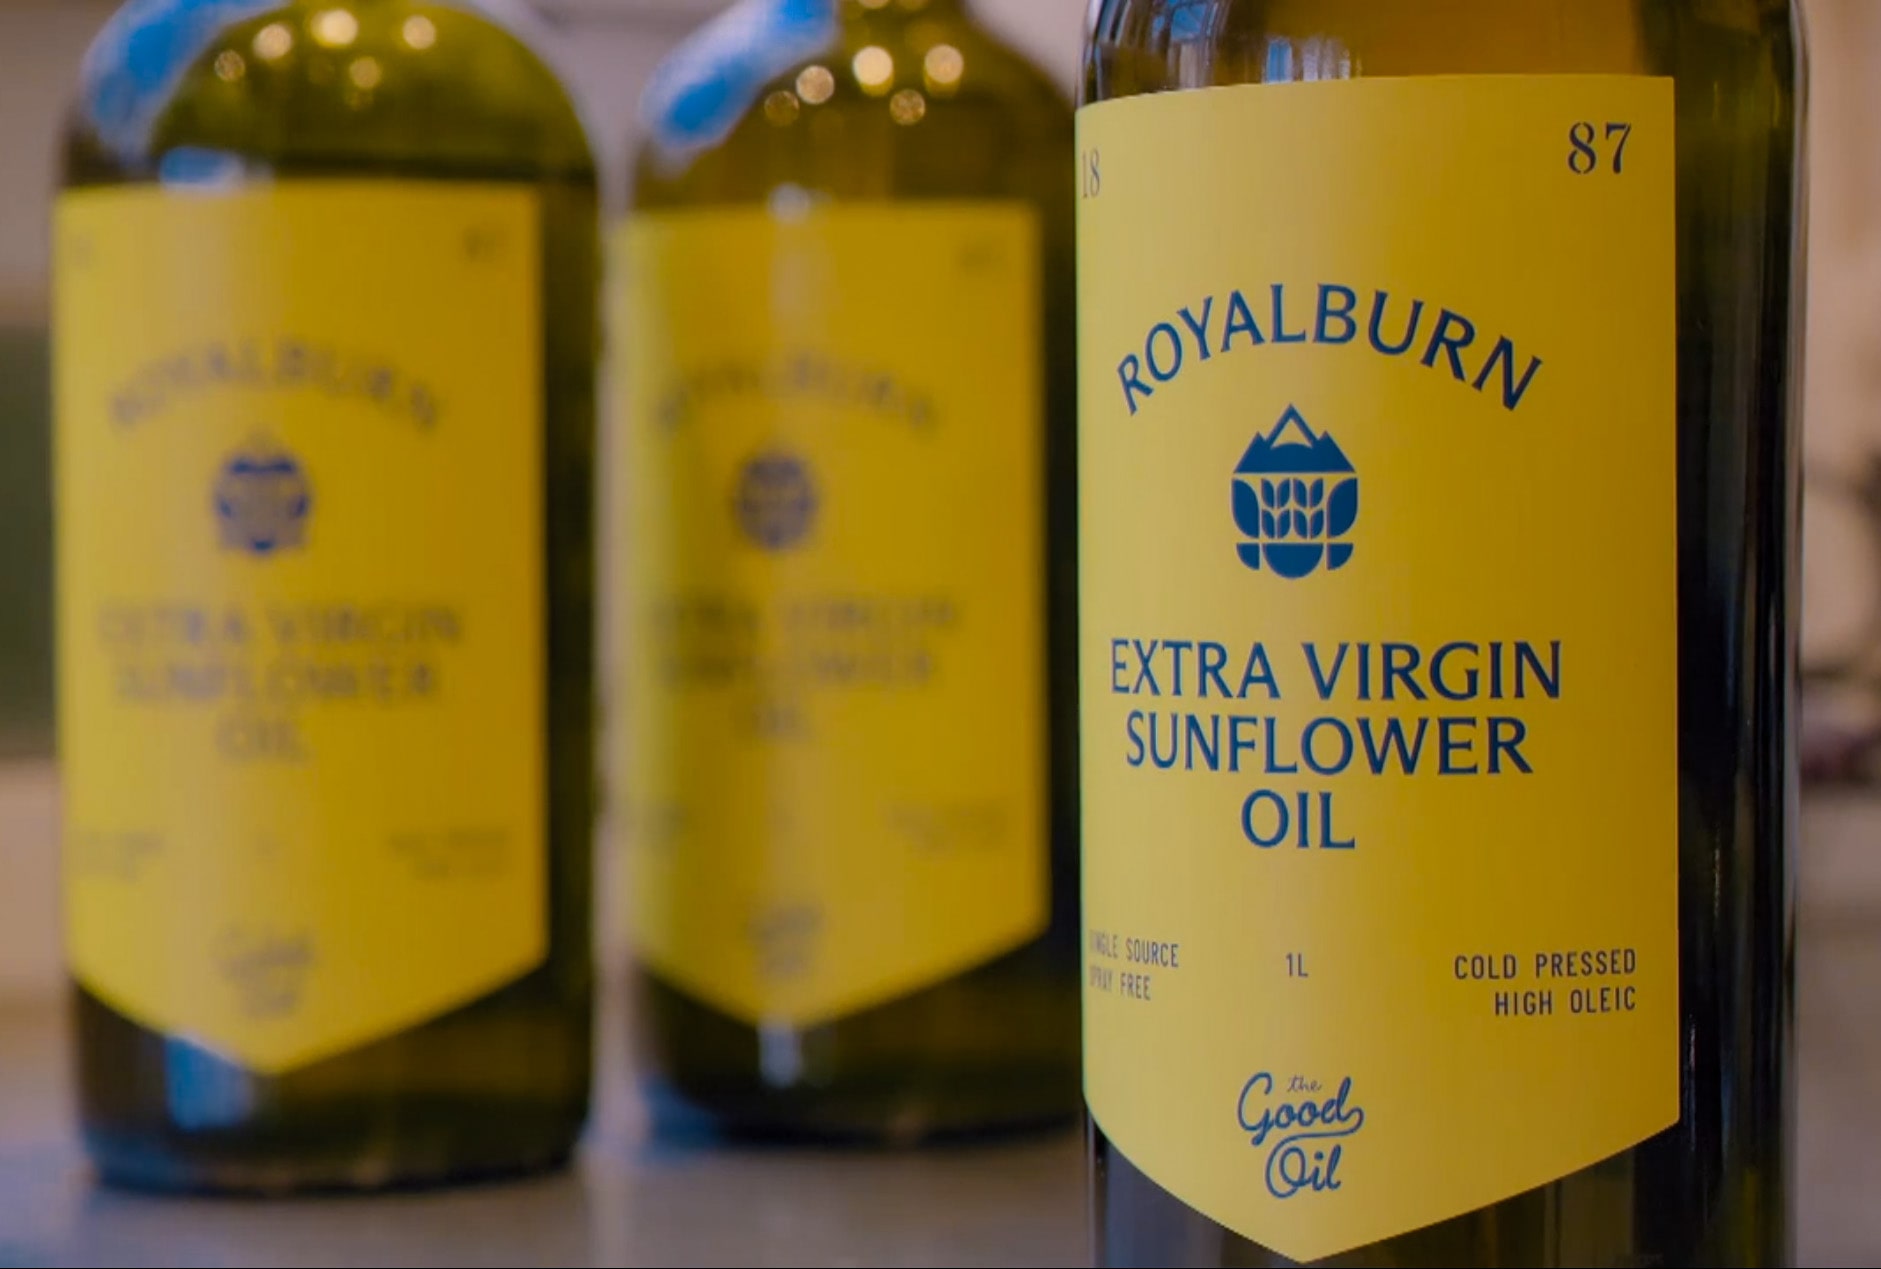 royalburn sunflower oil